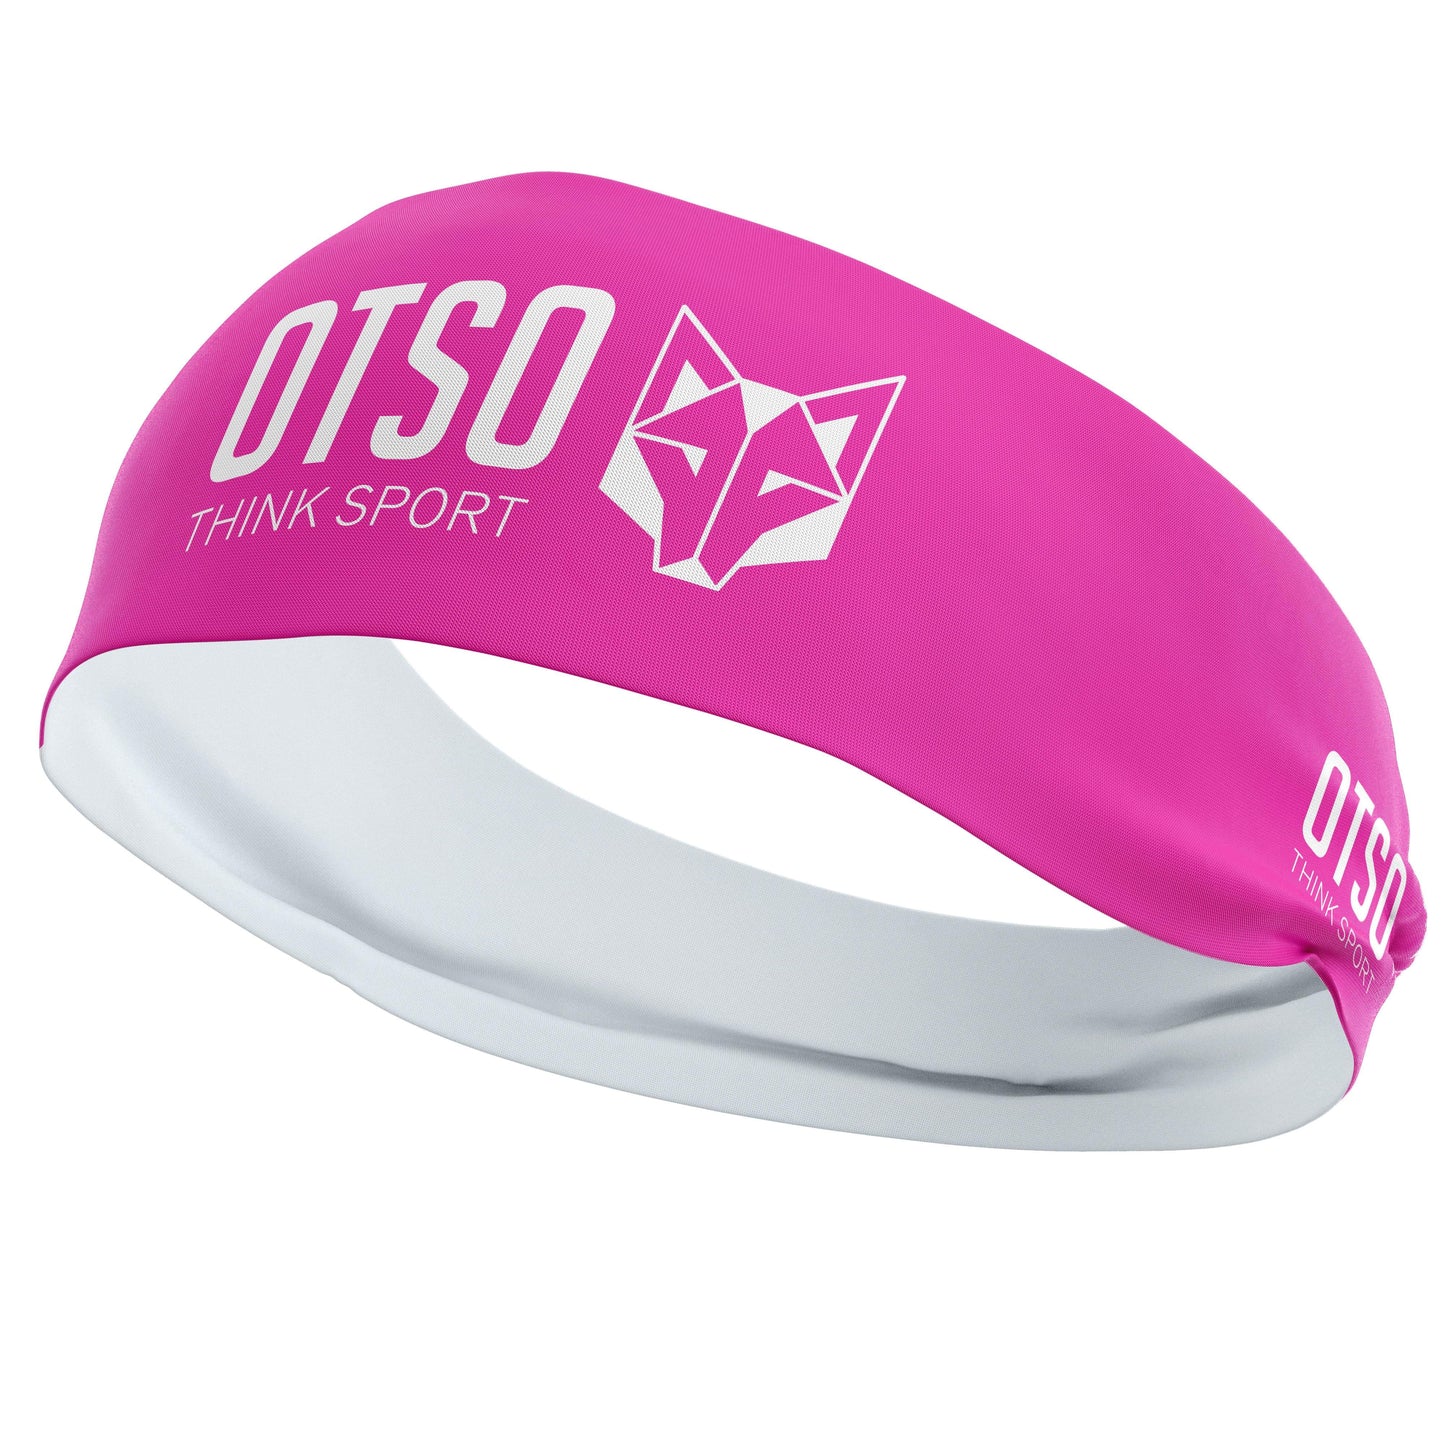 Headband Otso de 12 centímetros de grosor y color rosa. El producto es unisex y de talla única